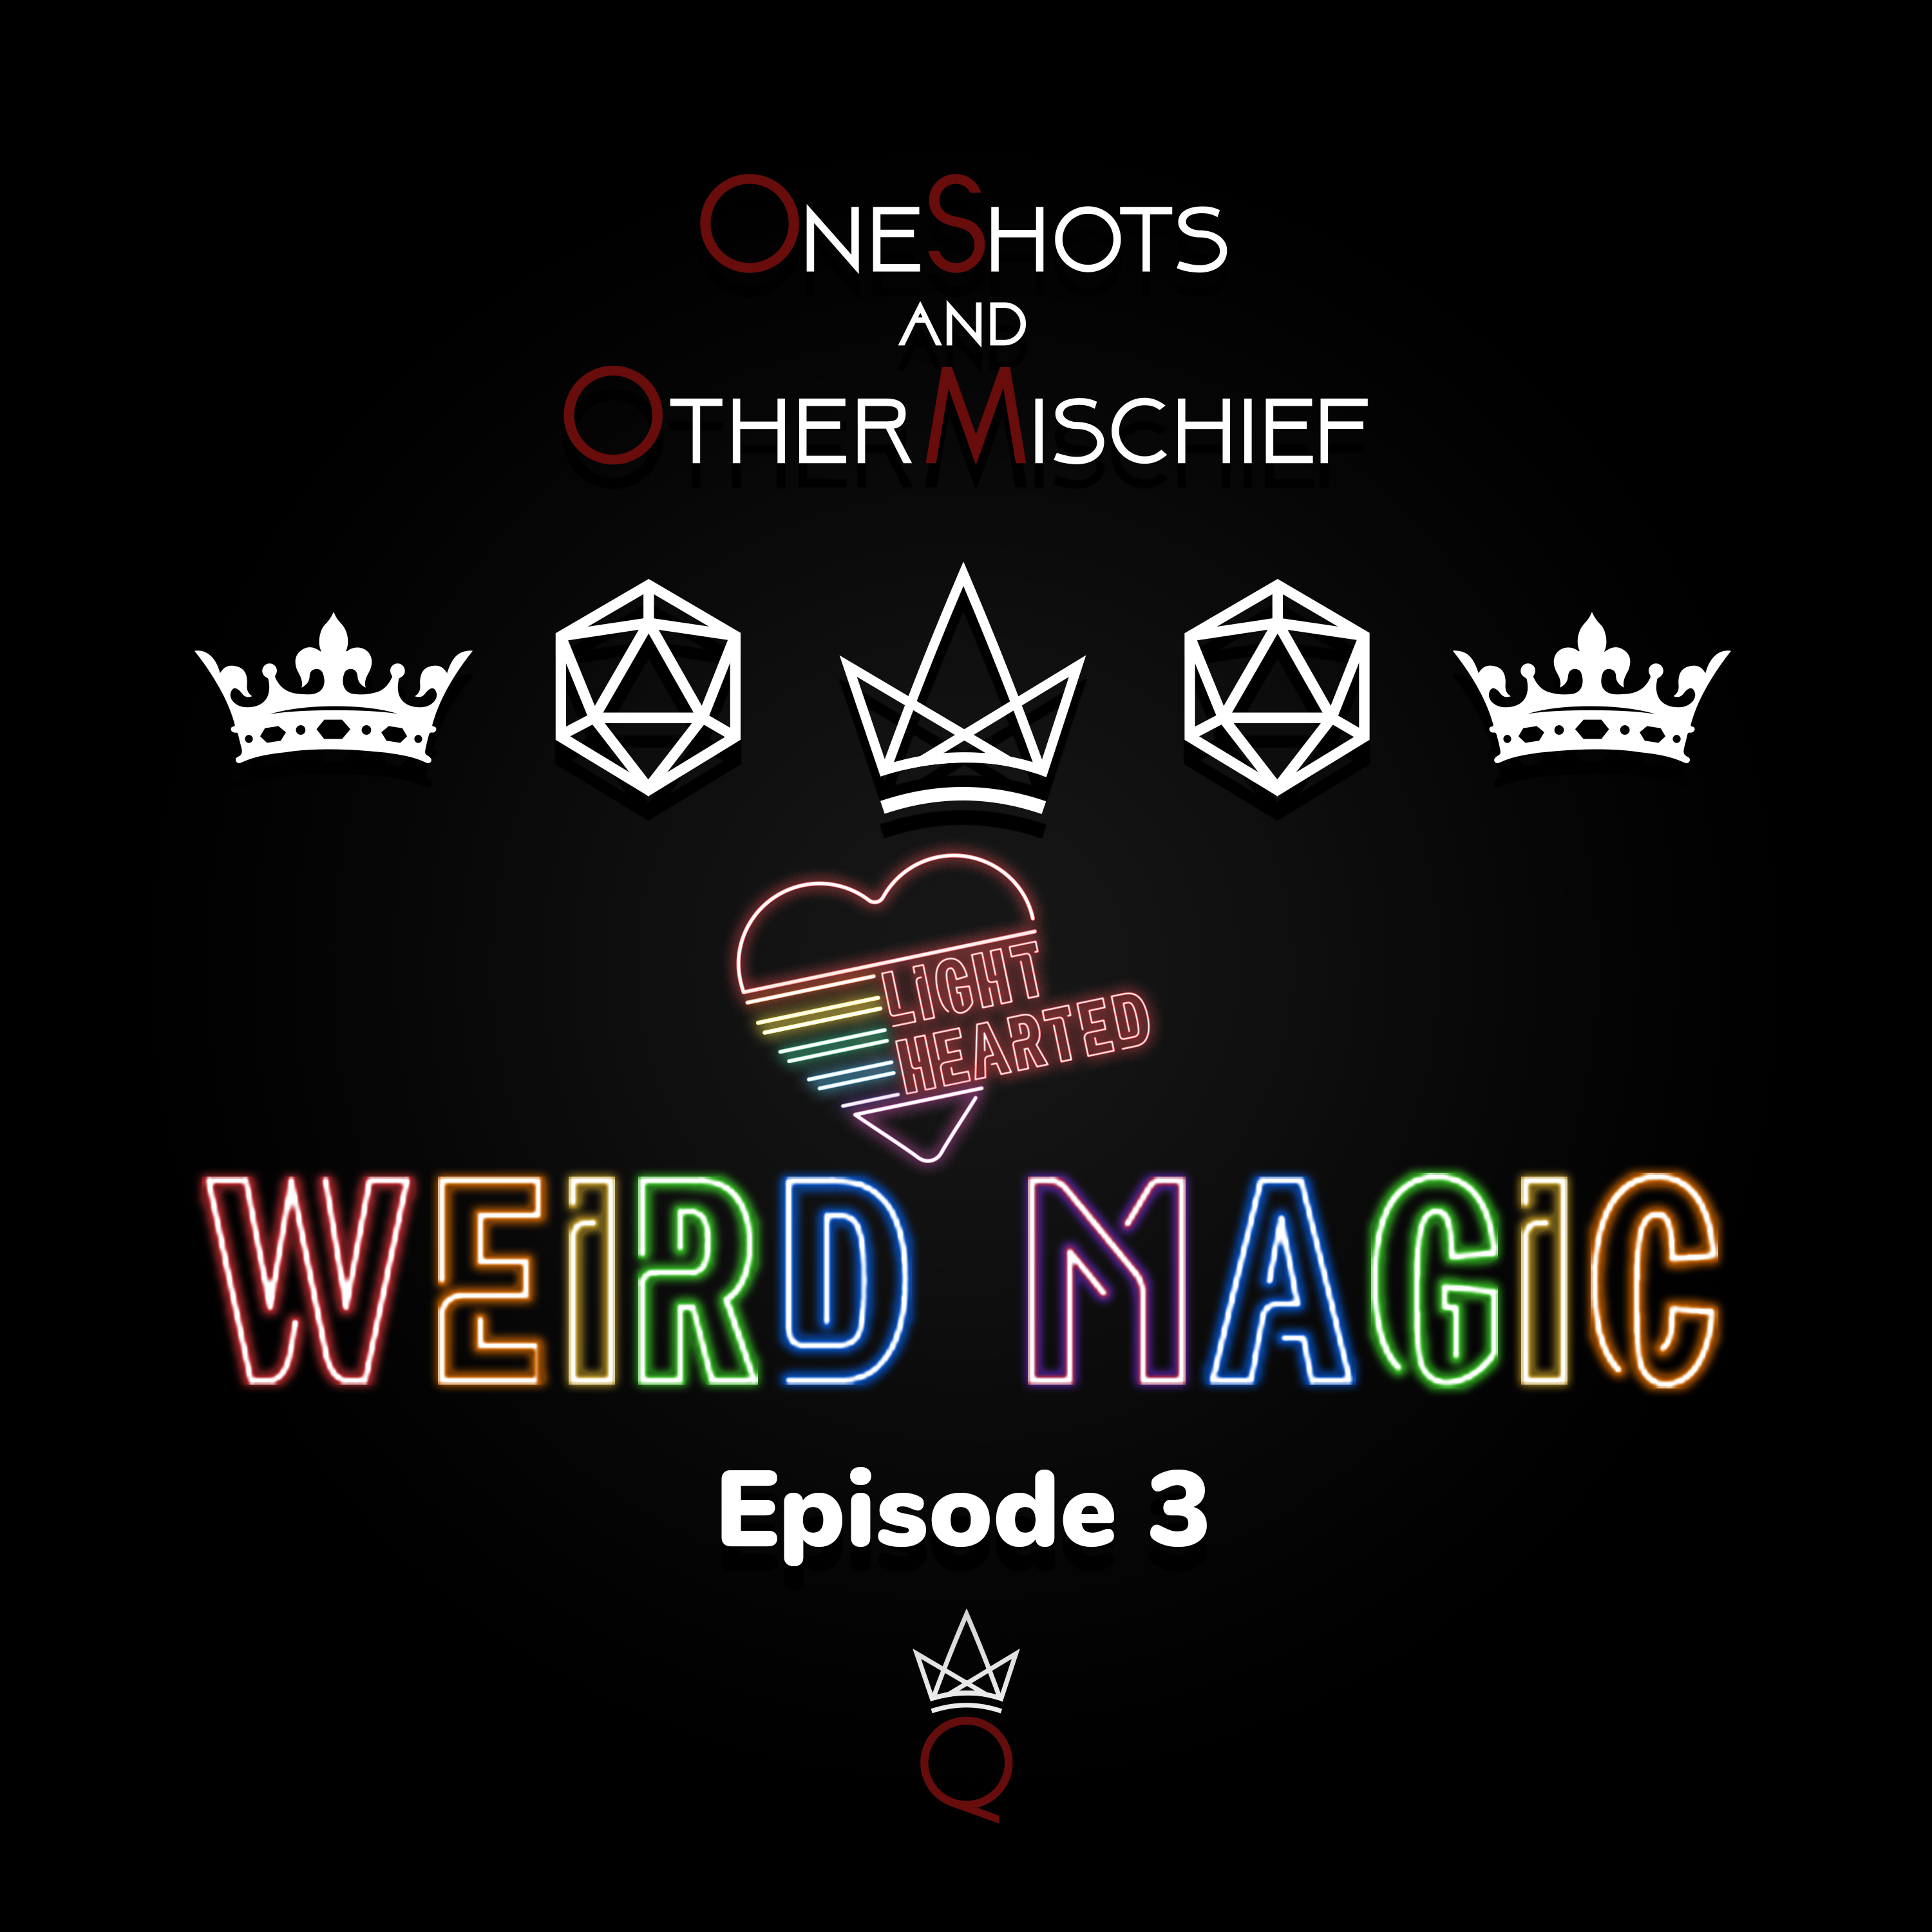 Lighthearted - Weird Magic, Episode 3